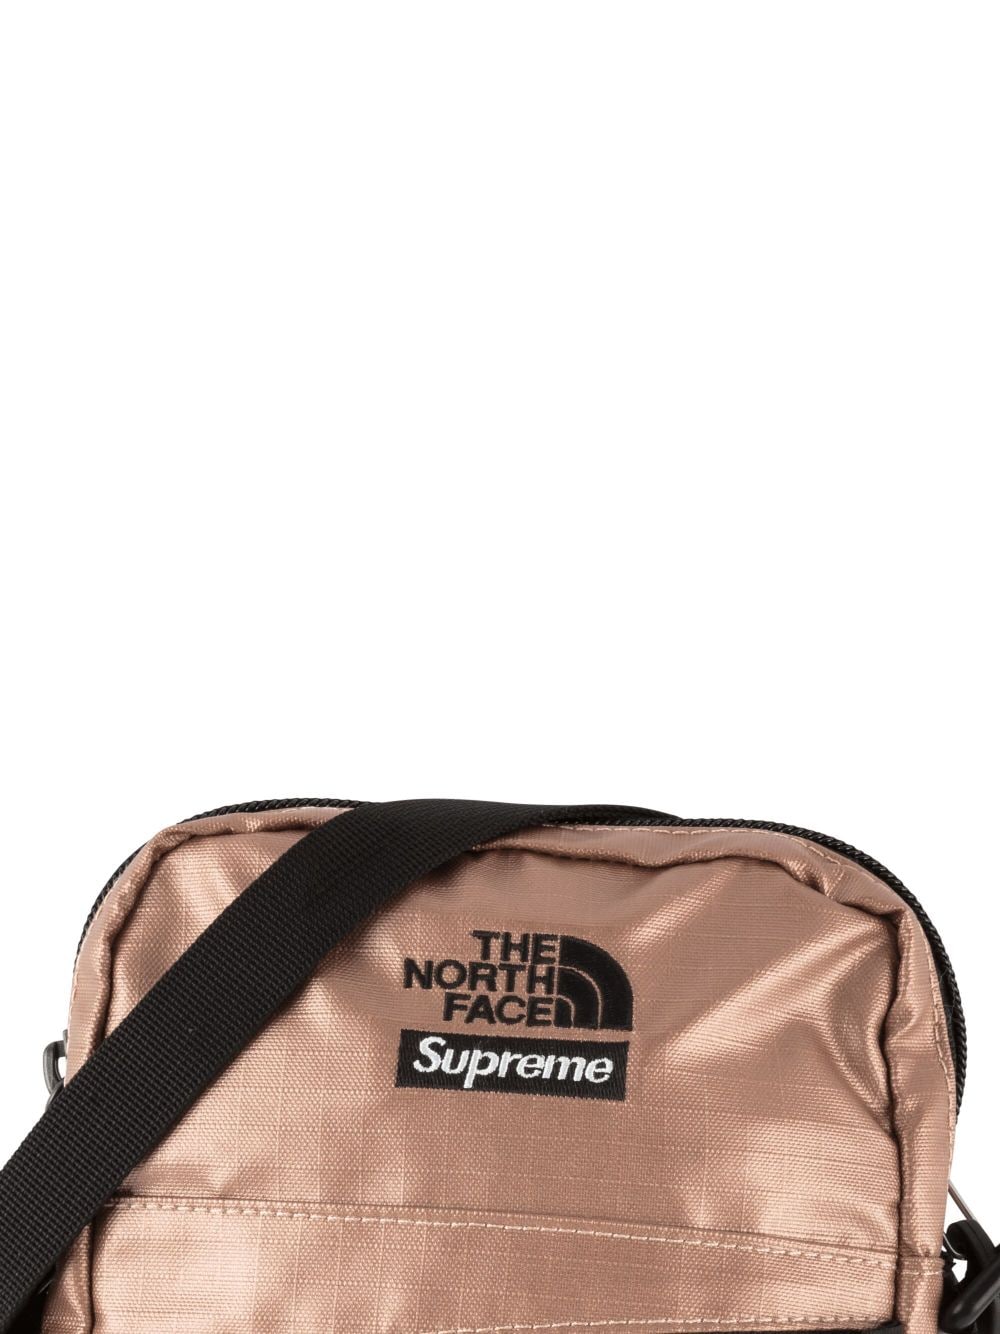 Supreme The North Face Metallic Shoulder Bag Gold